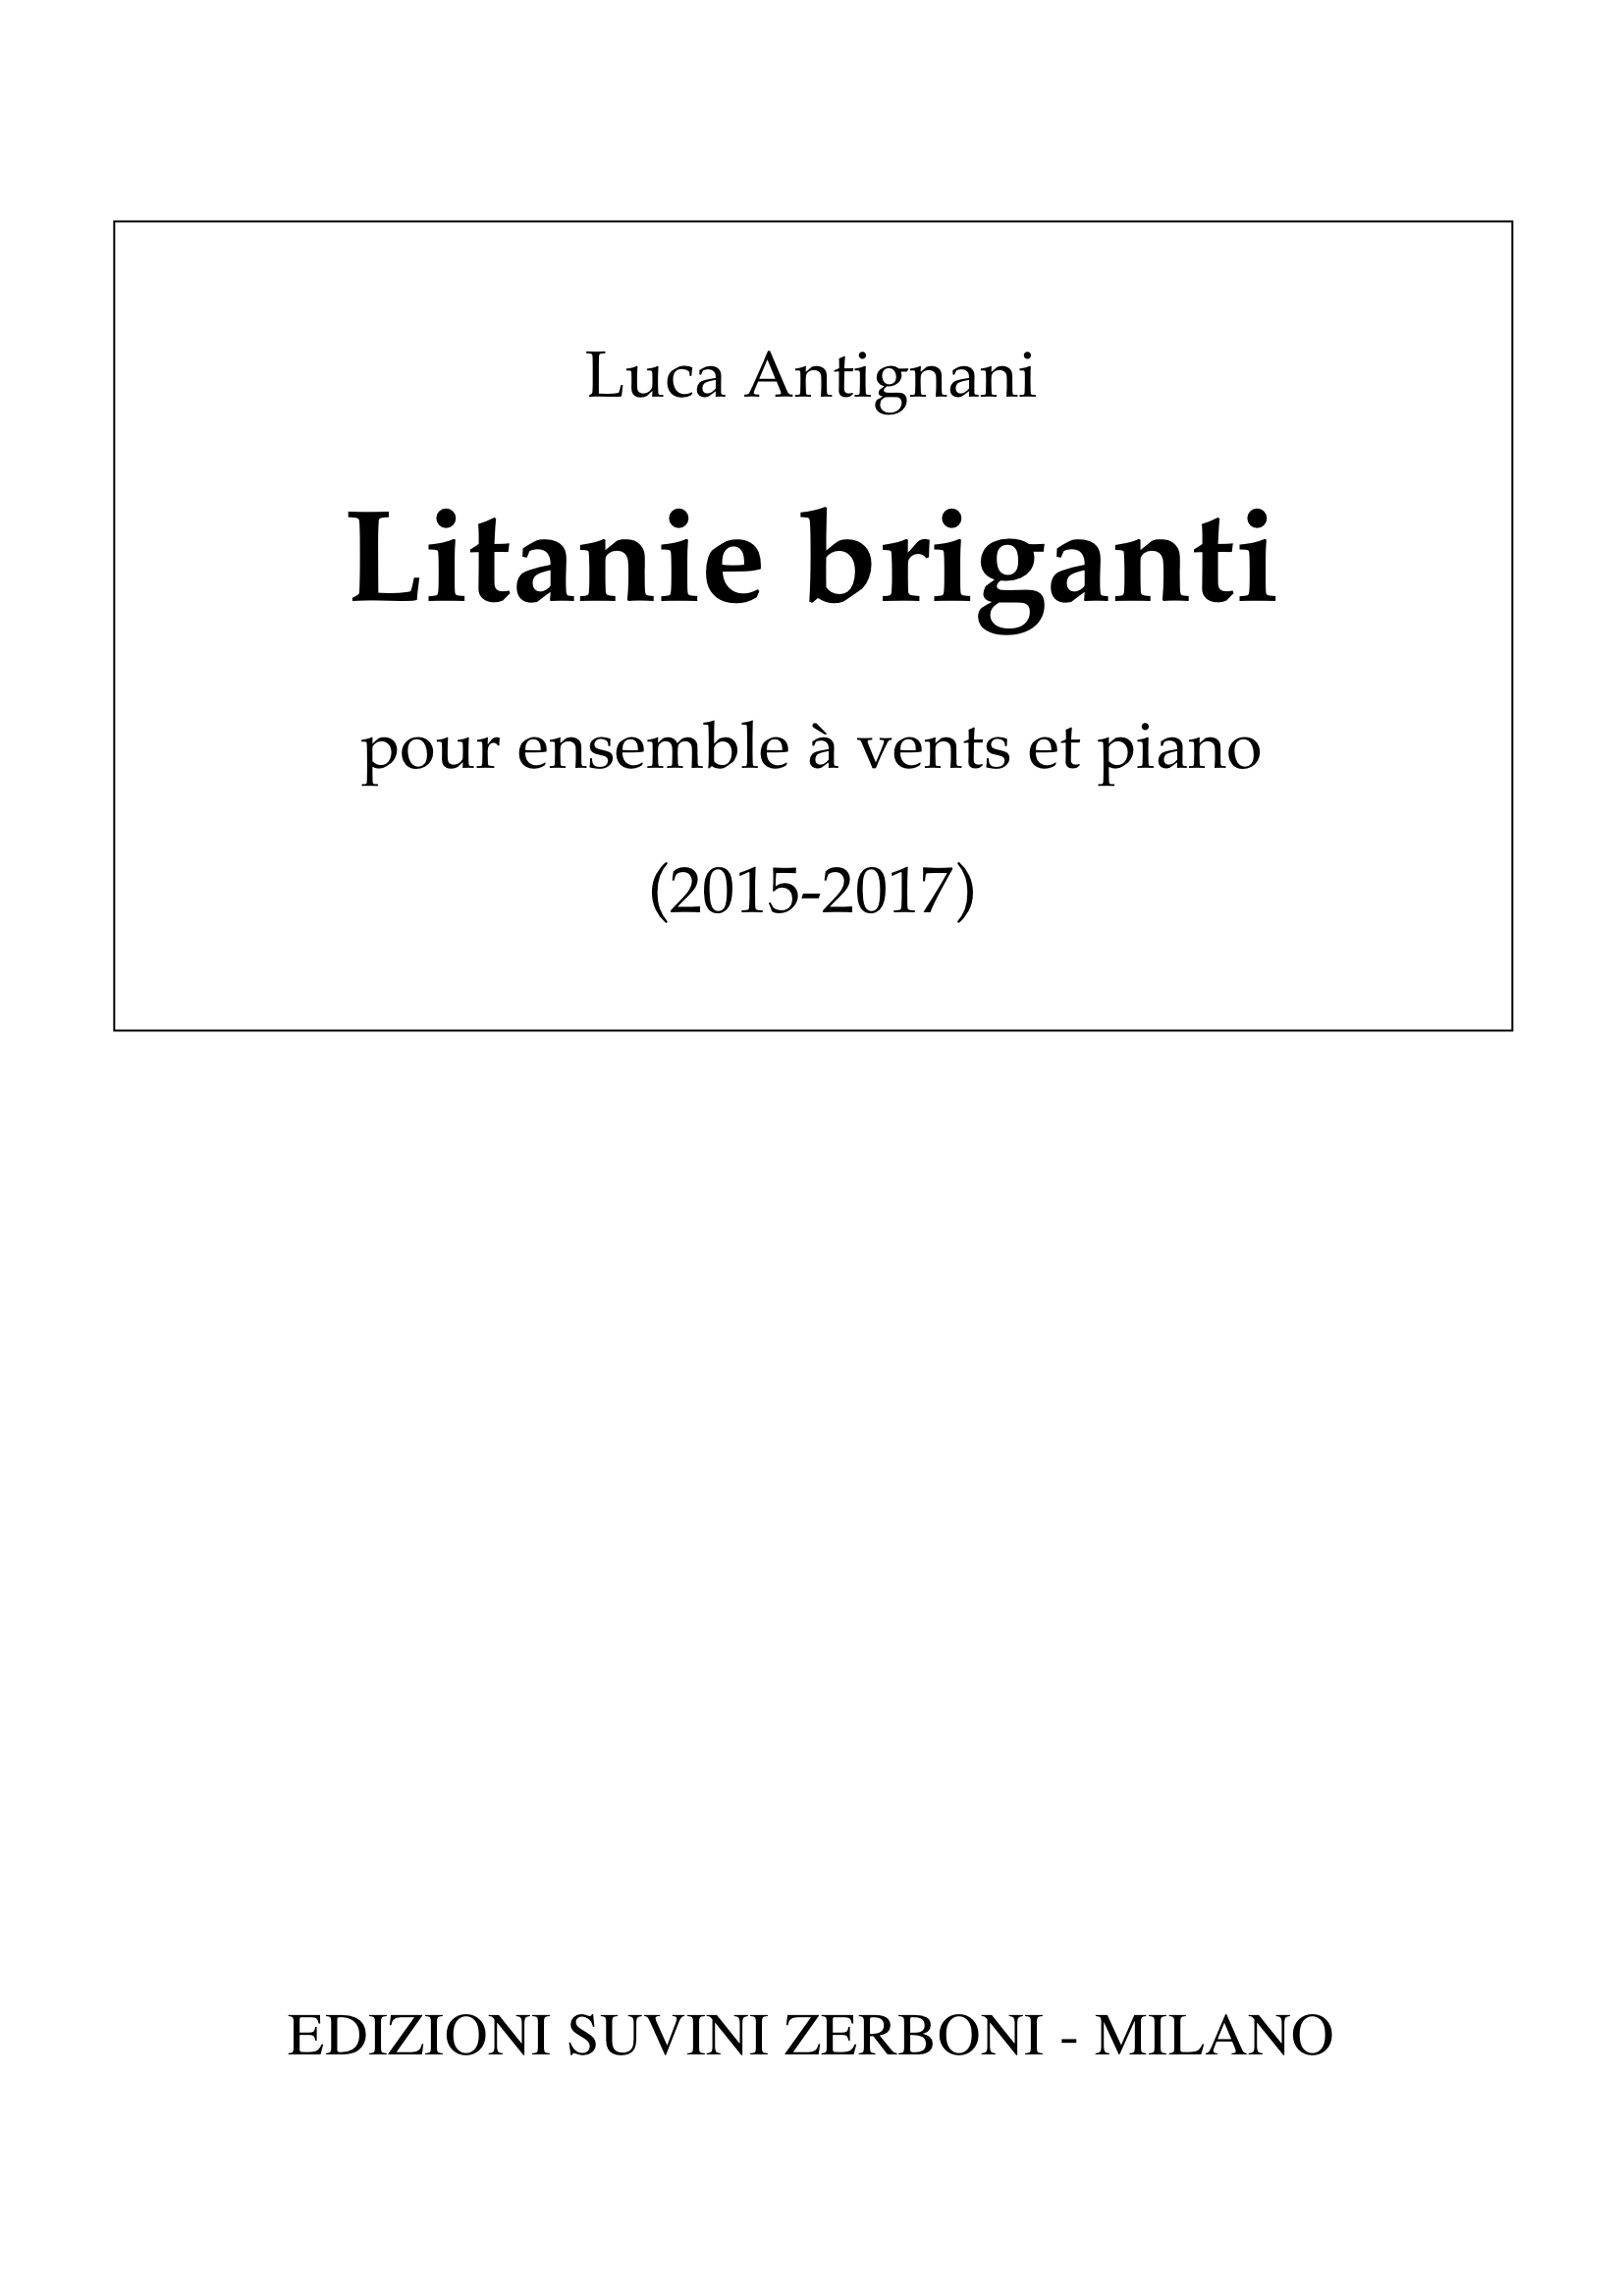 Litanie briganti_Antignani 1